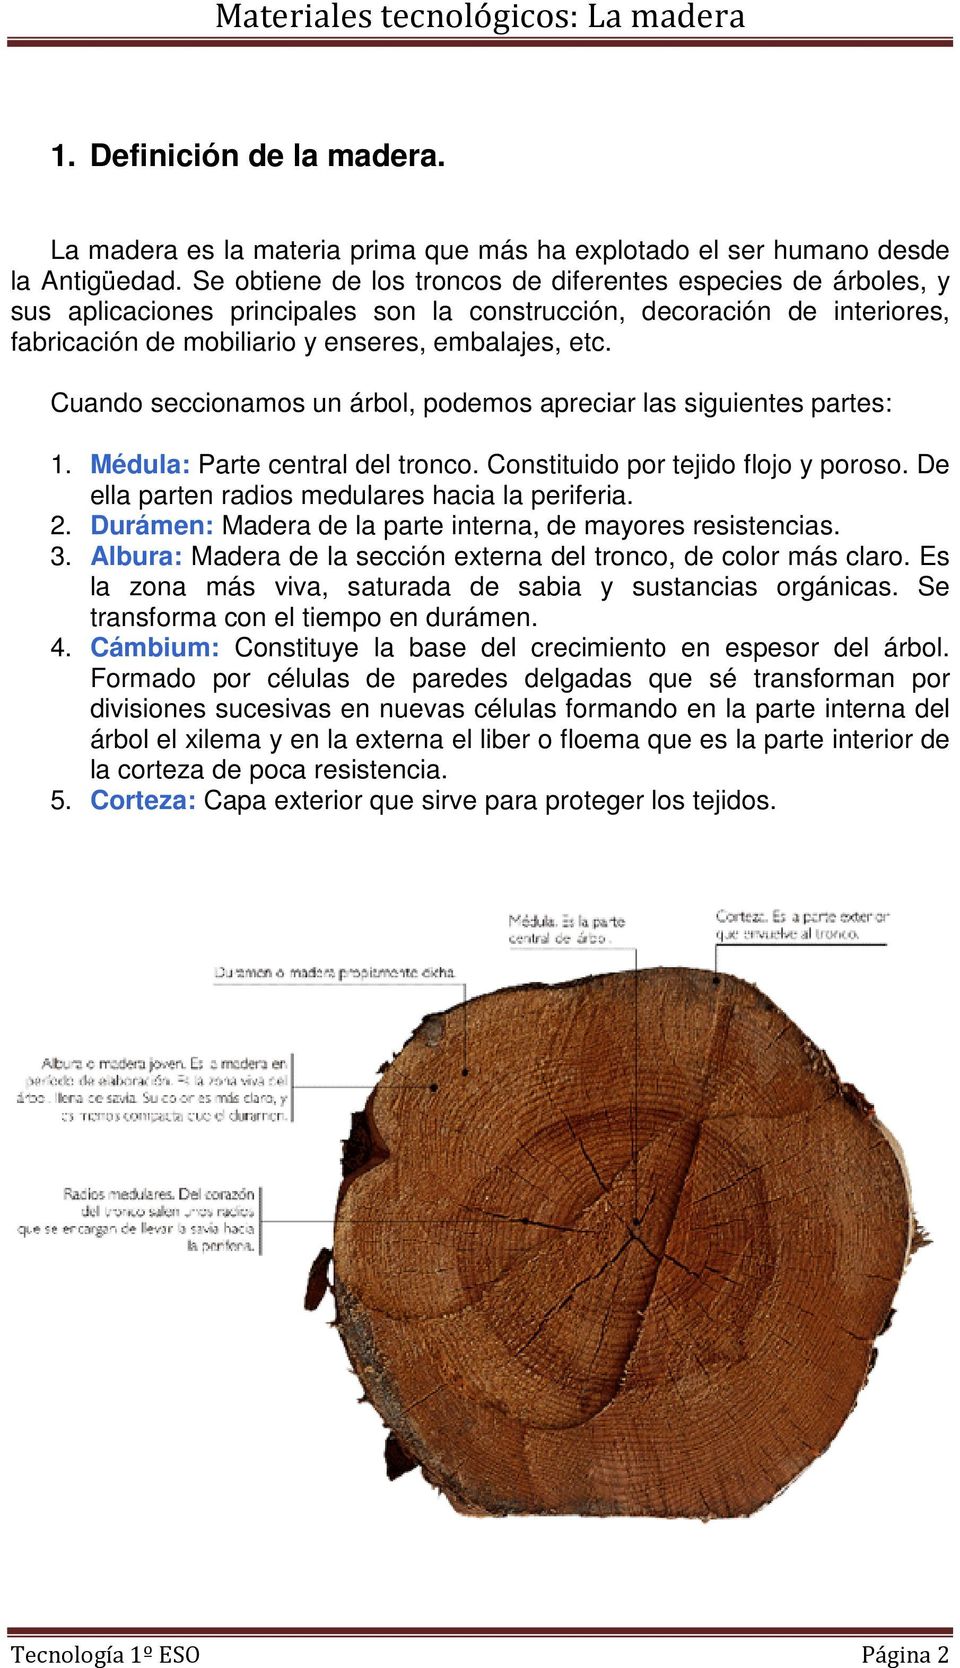 Cuando seccionamos un árbol, podemos apreciar las siguientes partes: 1. Médula: Parte central del tronco. Constituido por tejido flojo y poroso. De ella parten radios medulares hacia la periferia. 2.